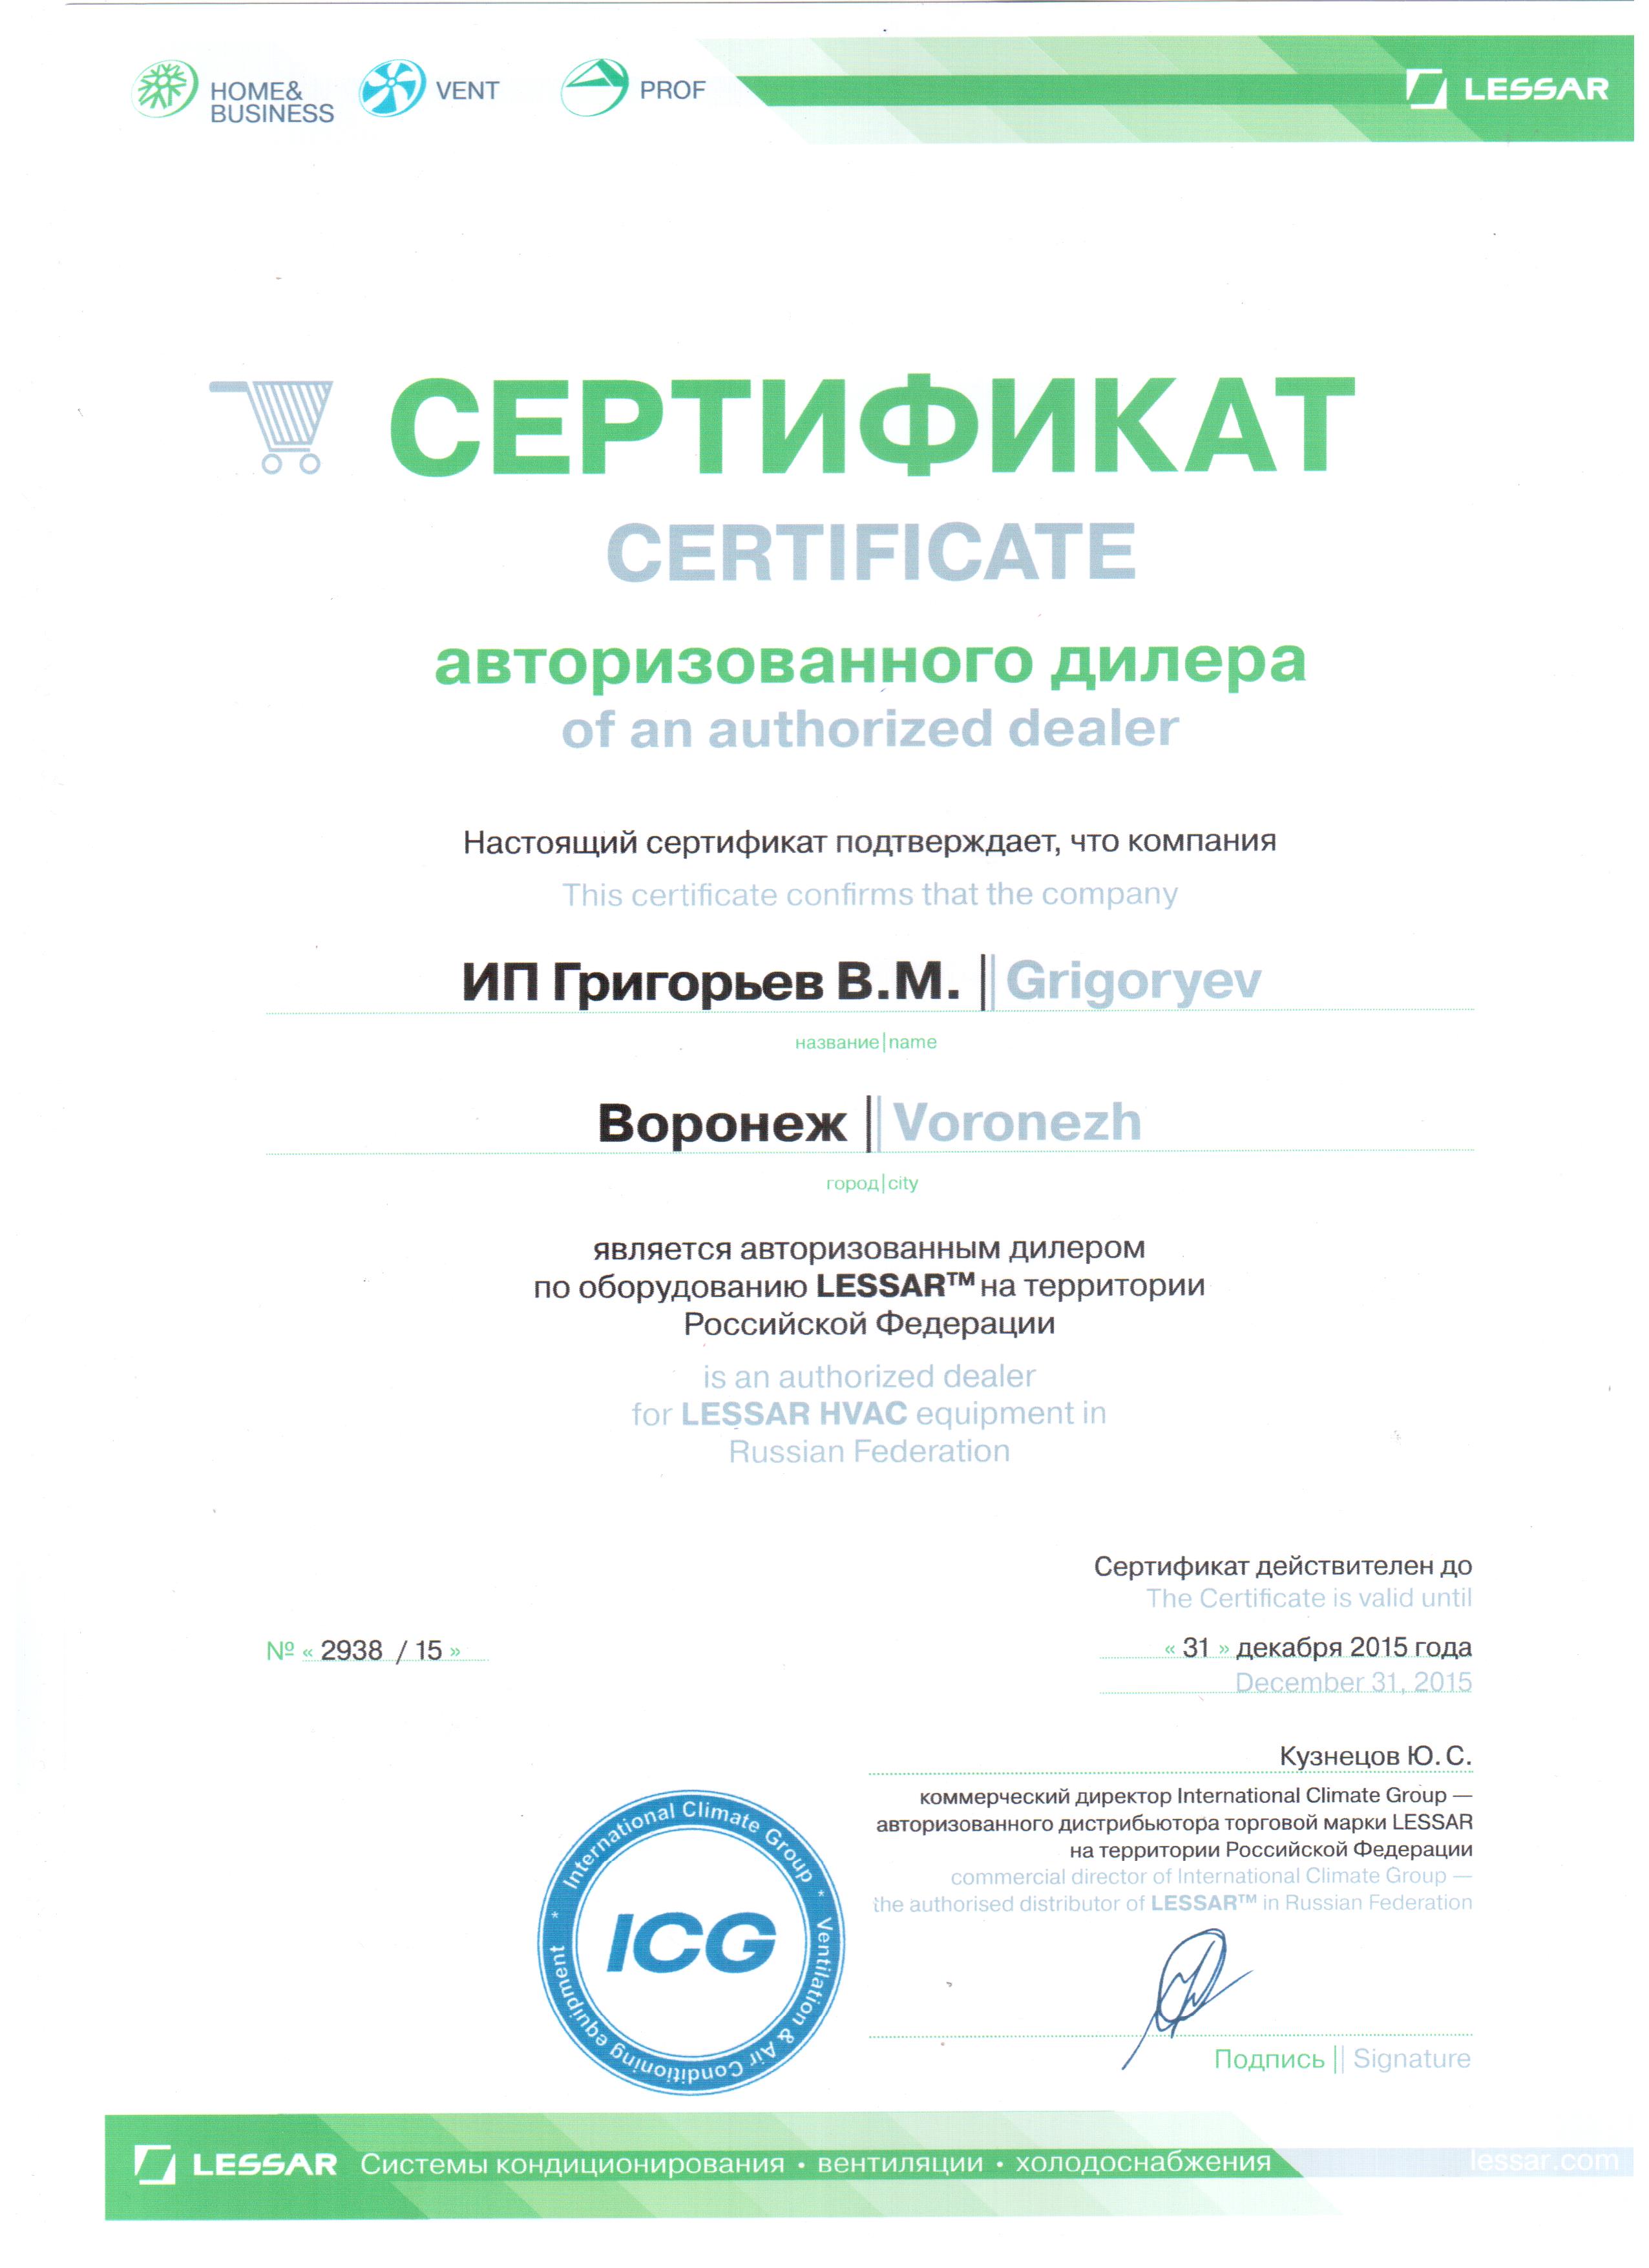 Нажмите на изображение, чтобы посмотреть сертификат Lessar